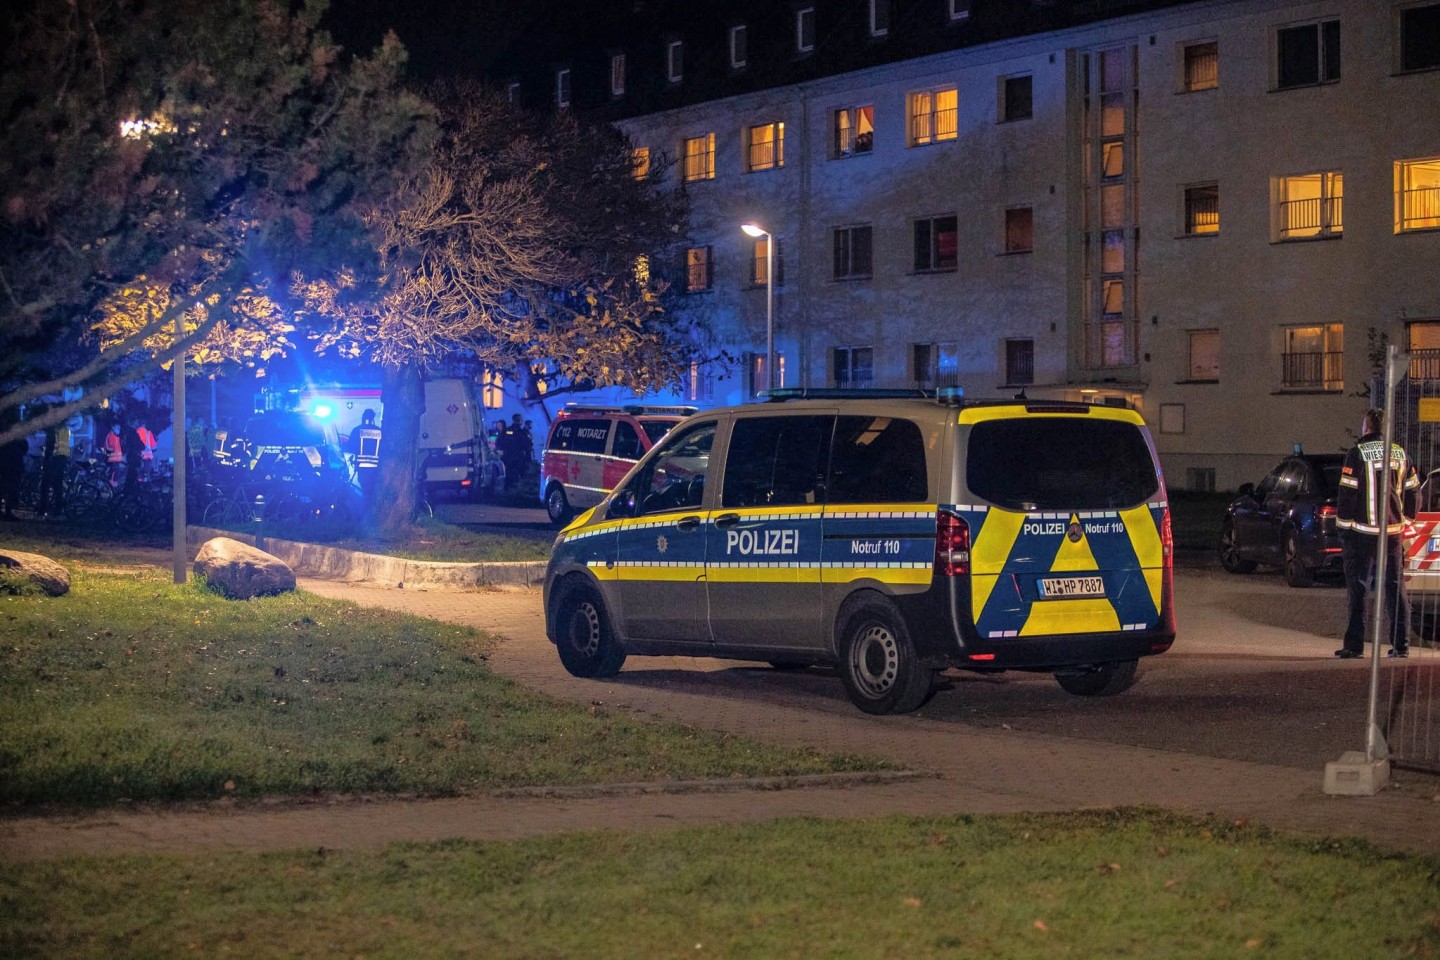 Polizei und Rettungskräfte sind nach der Auseinandersetzung in einer Asylunterkunft im Wiesbadener Ortsbezirk Mainz-Kastel vor Ort.